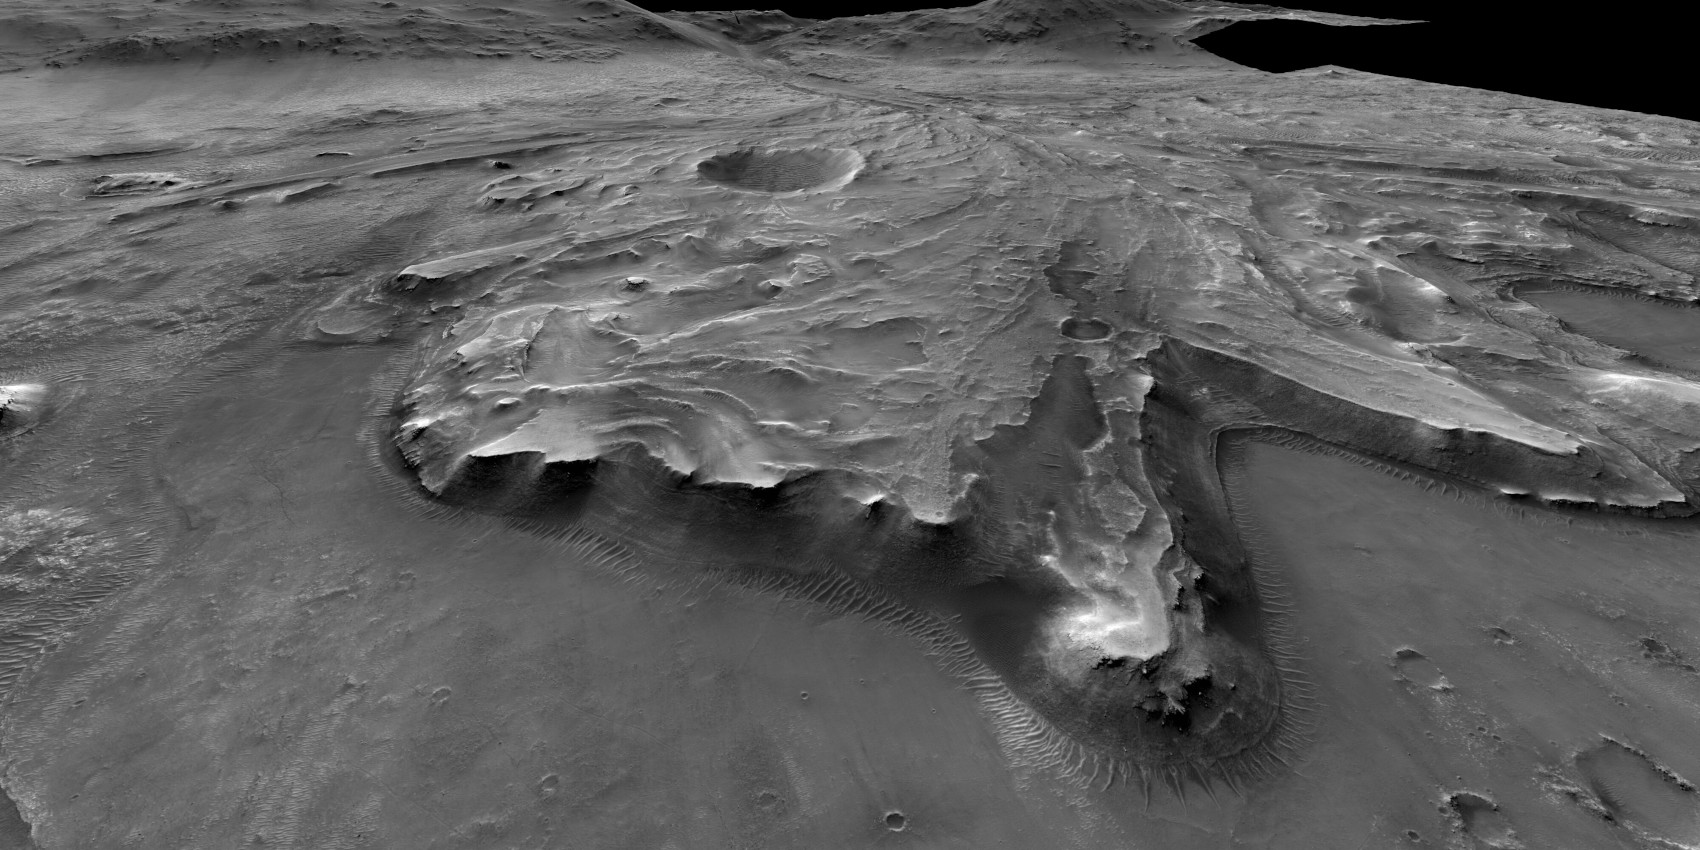 Aufnahme eines Kraters der Marsoberfläche in Schwarz-Weiß.